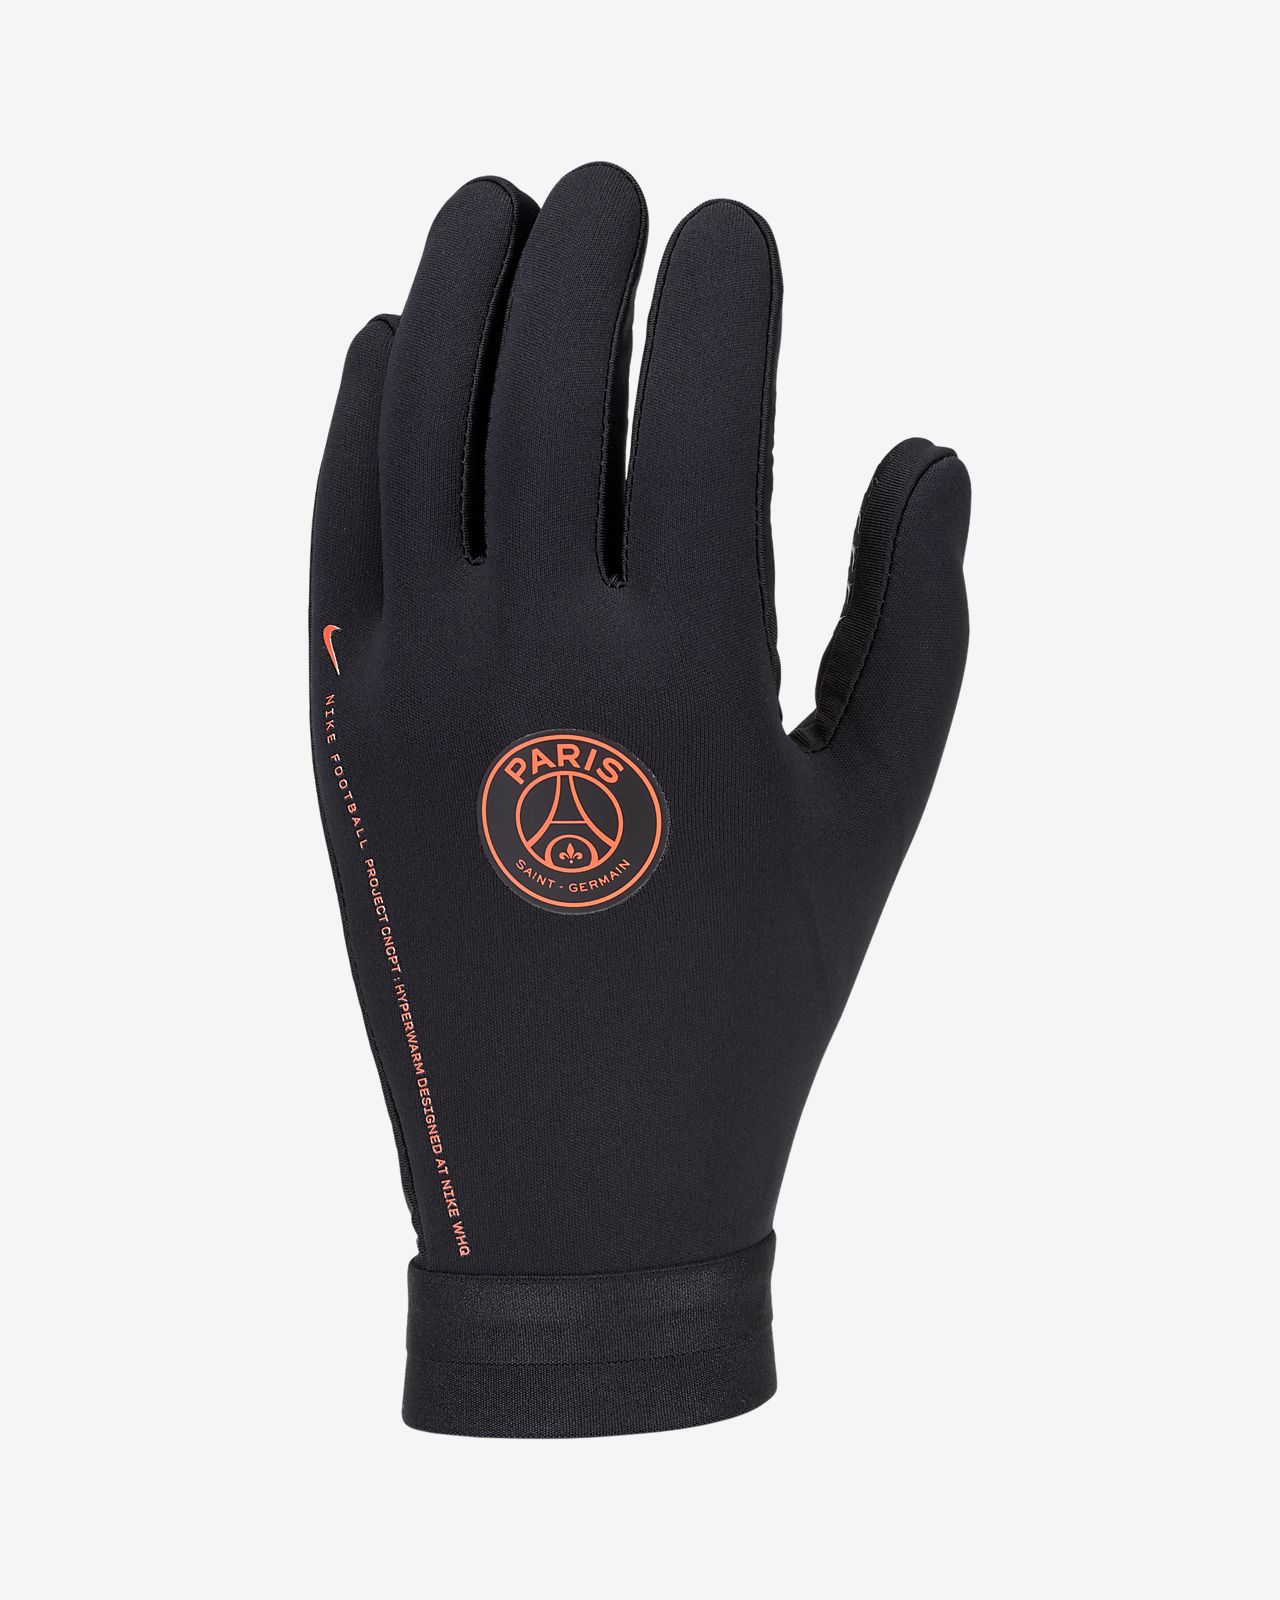 nike highlight gloves